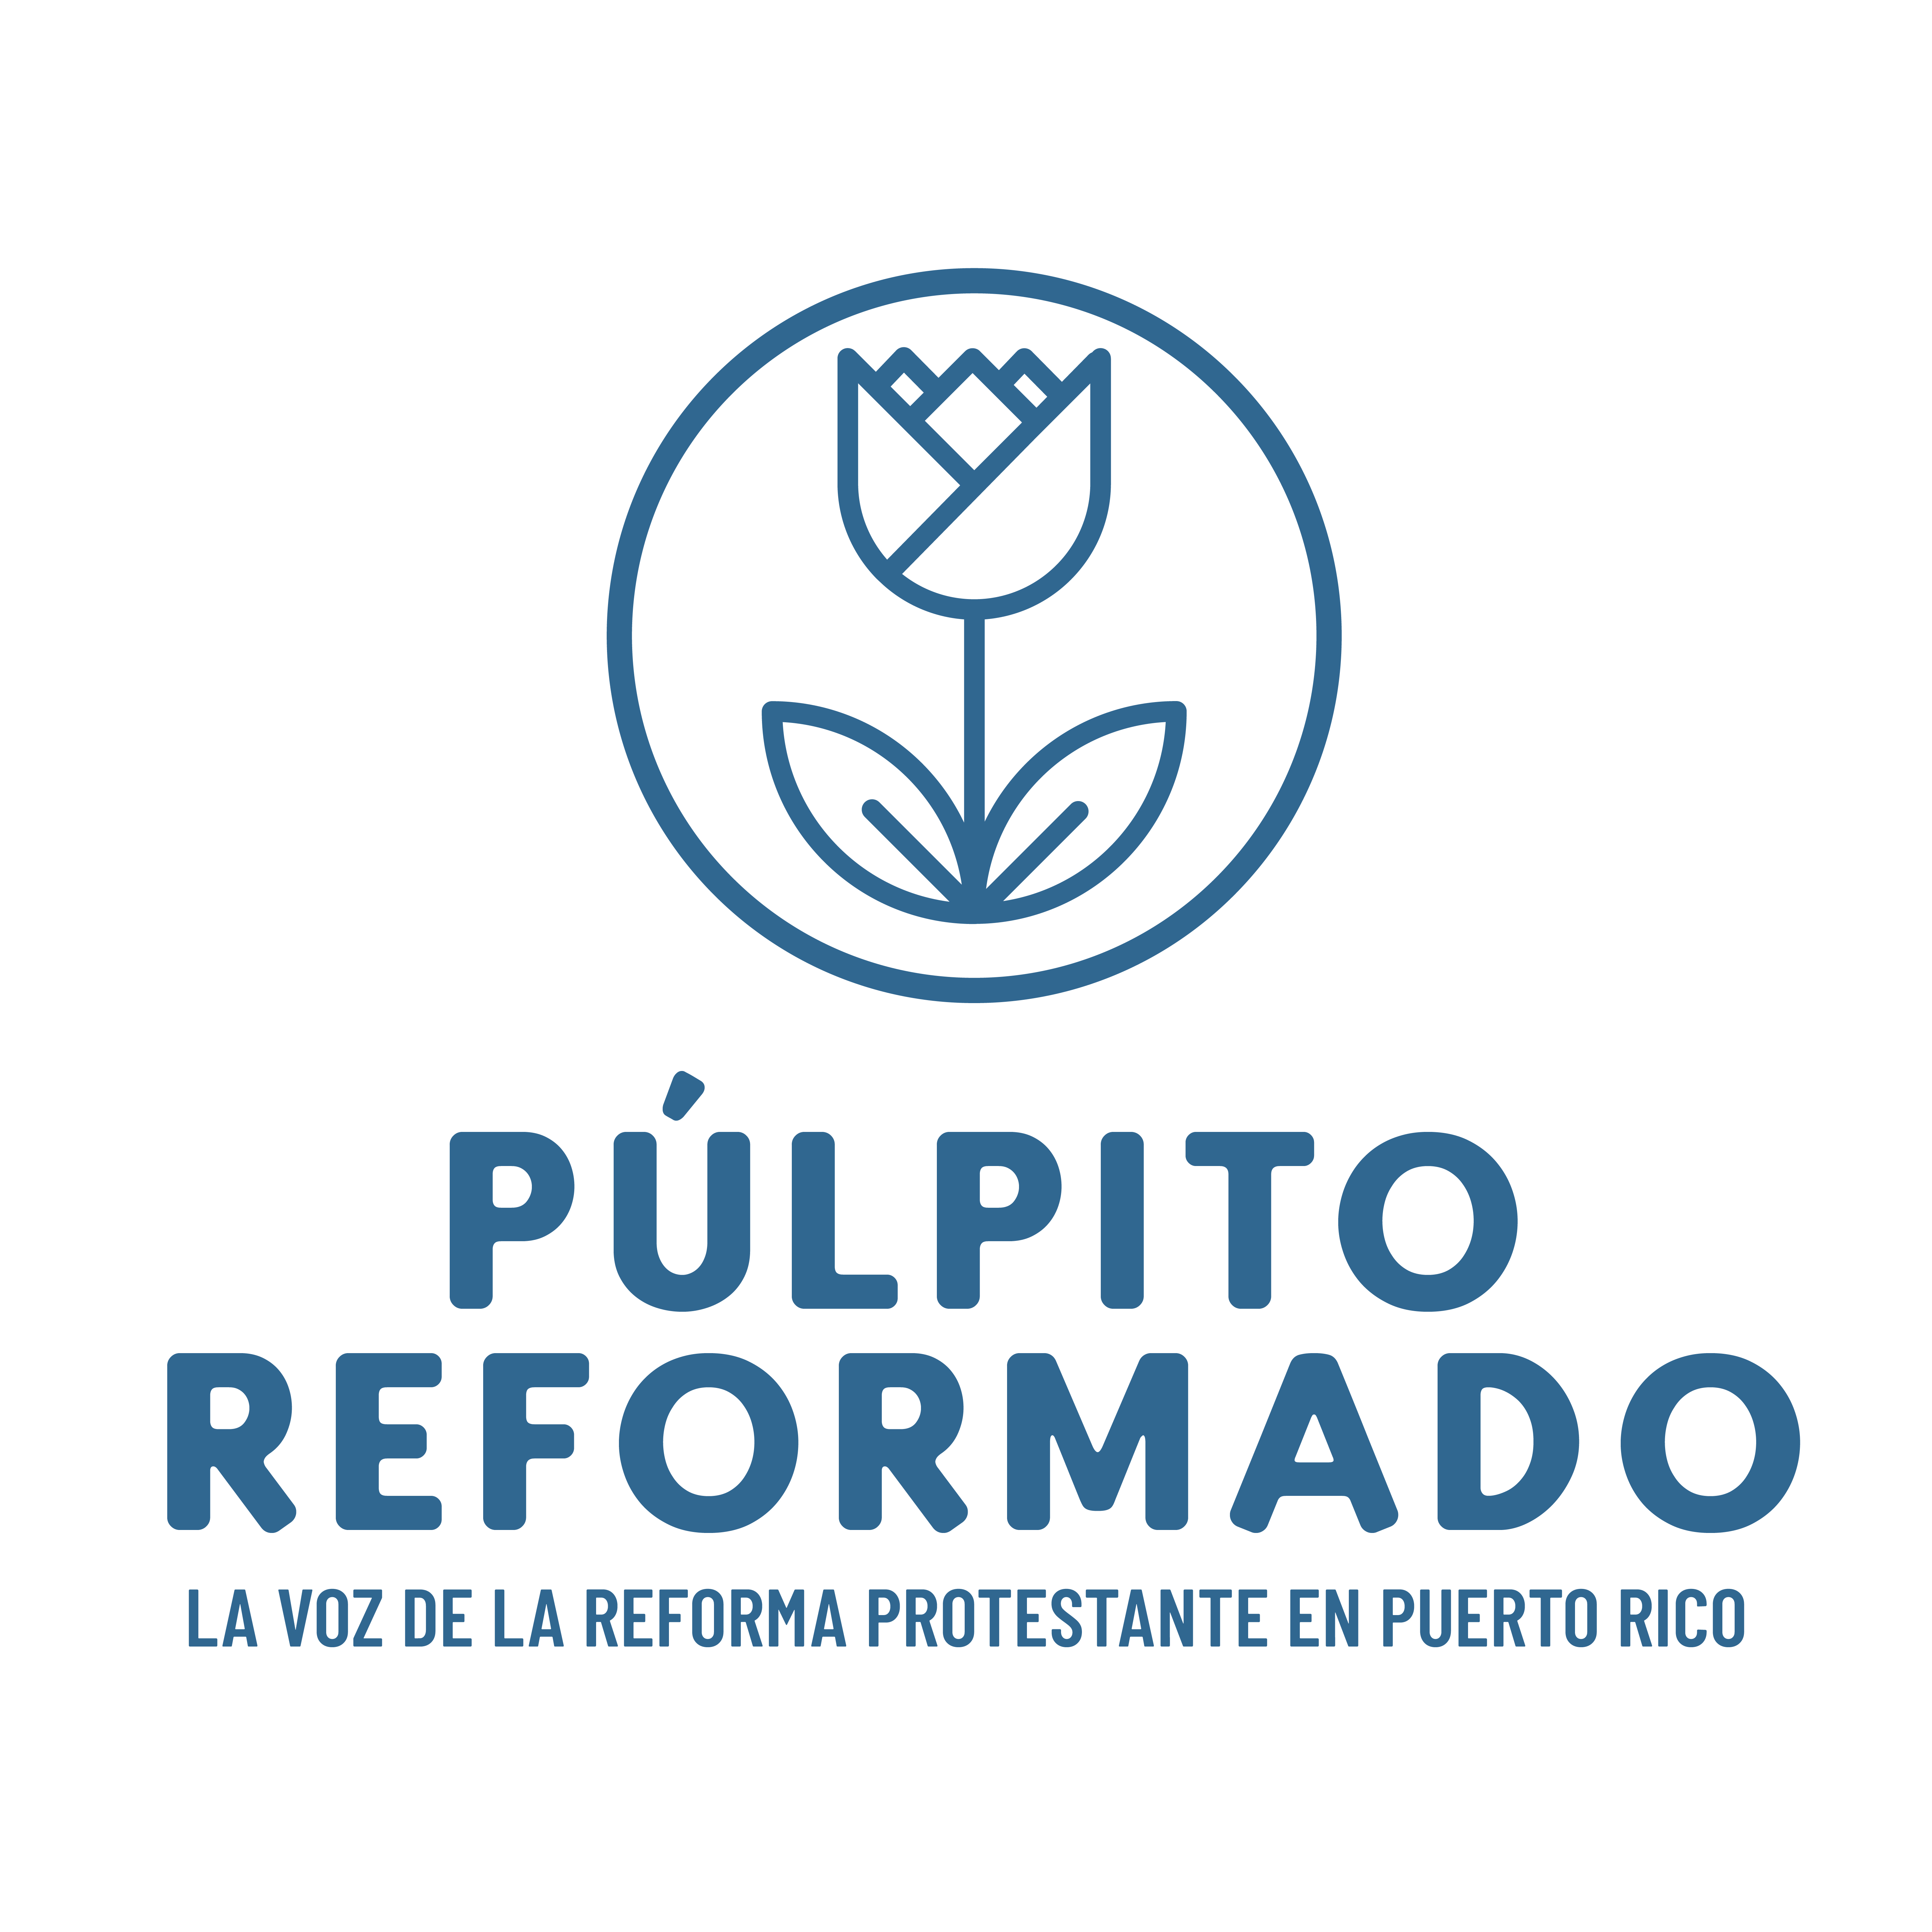 Pulpito Reformado - Promo sq-03